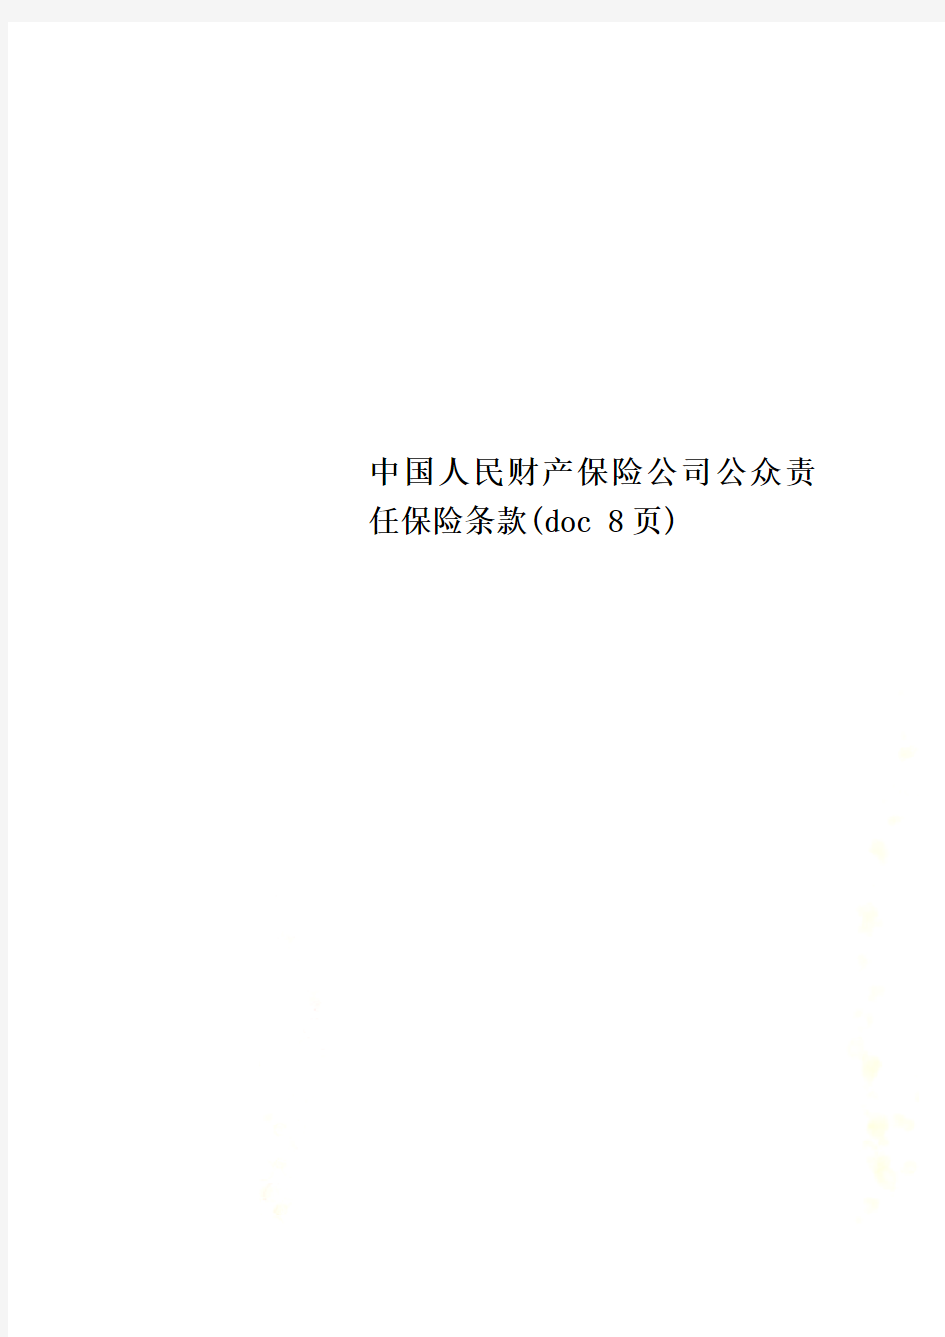 中国人民财产保险公司公众责任保险条款(doc 8页)